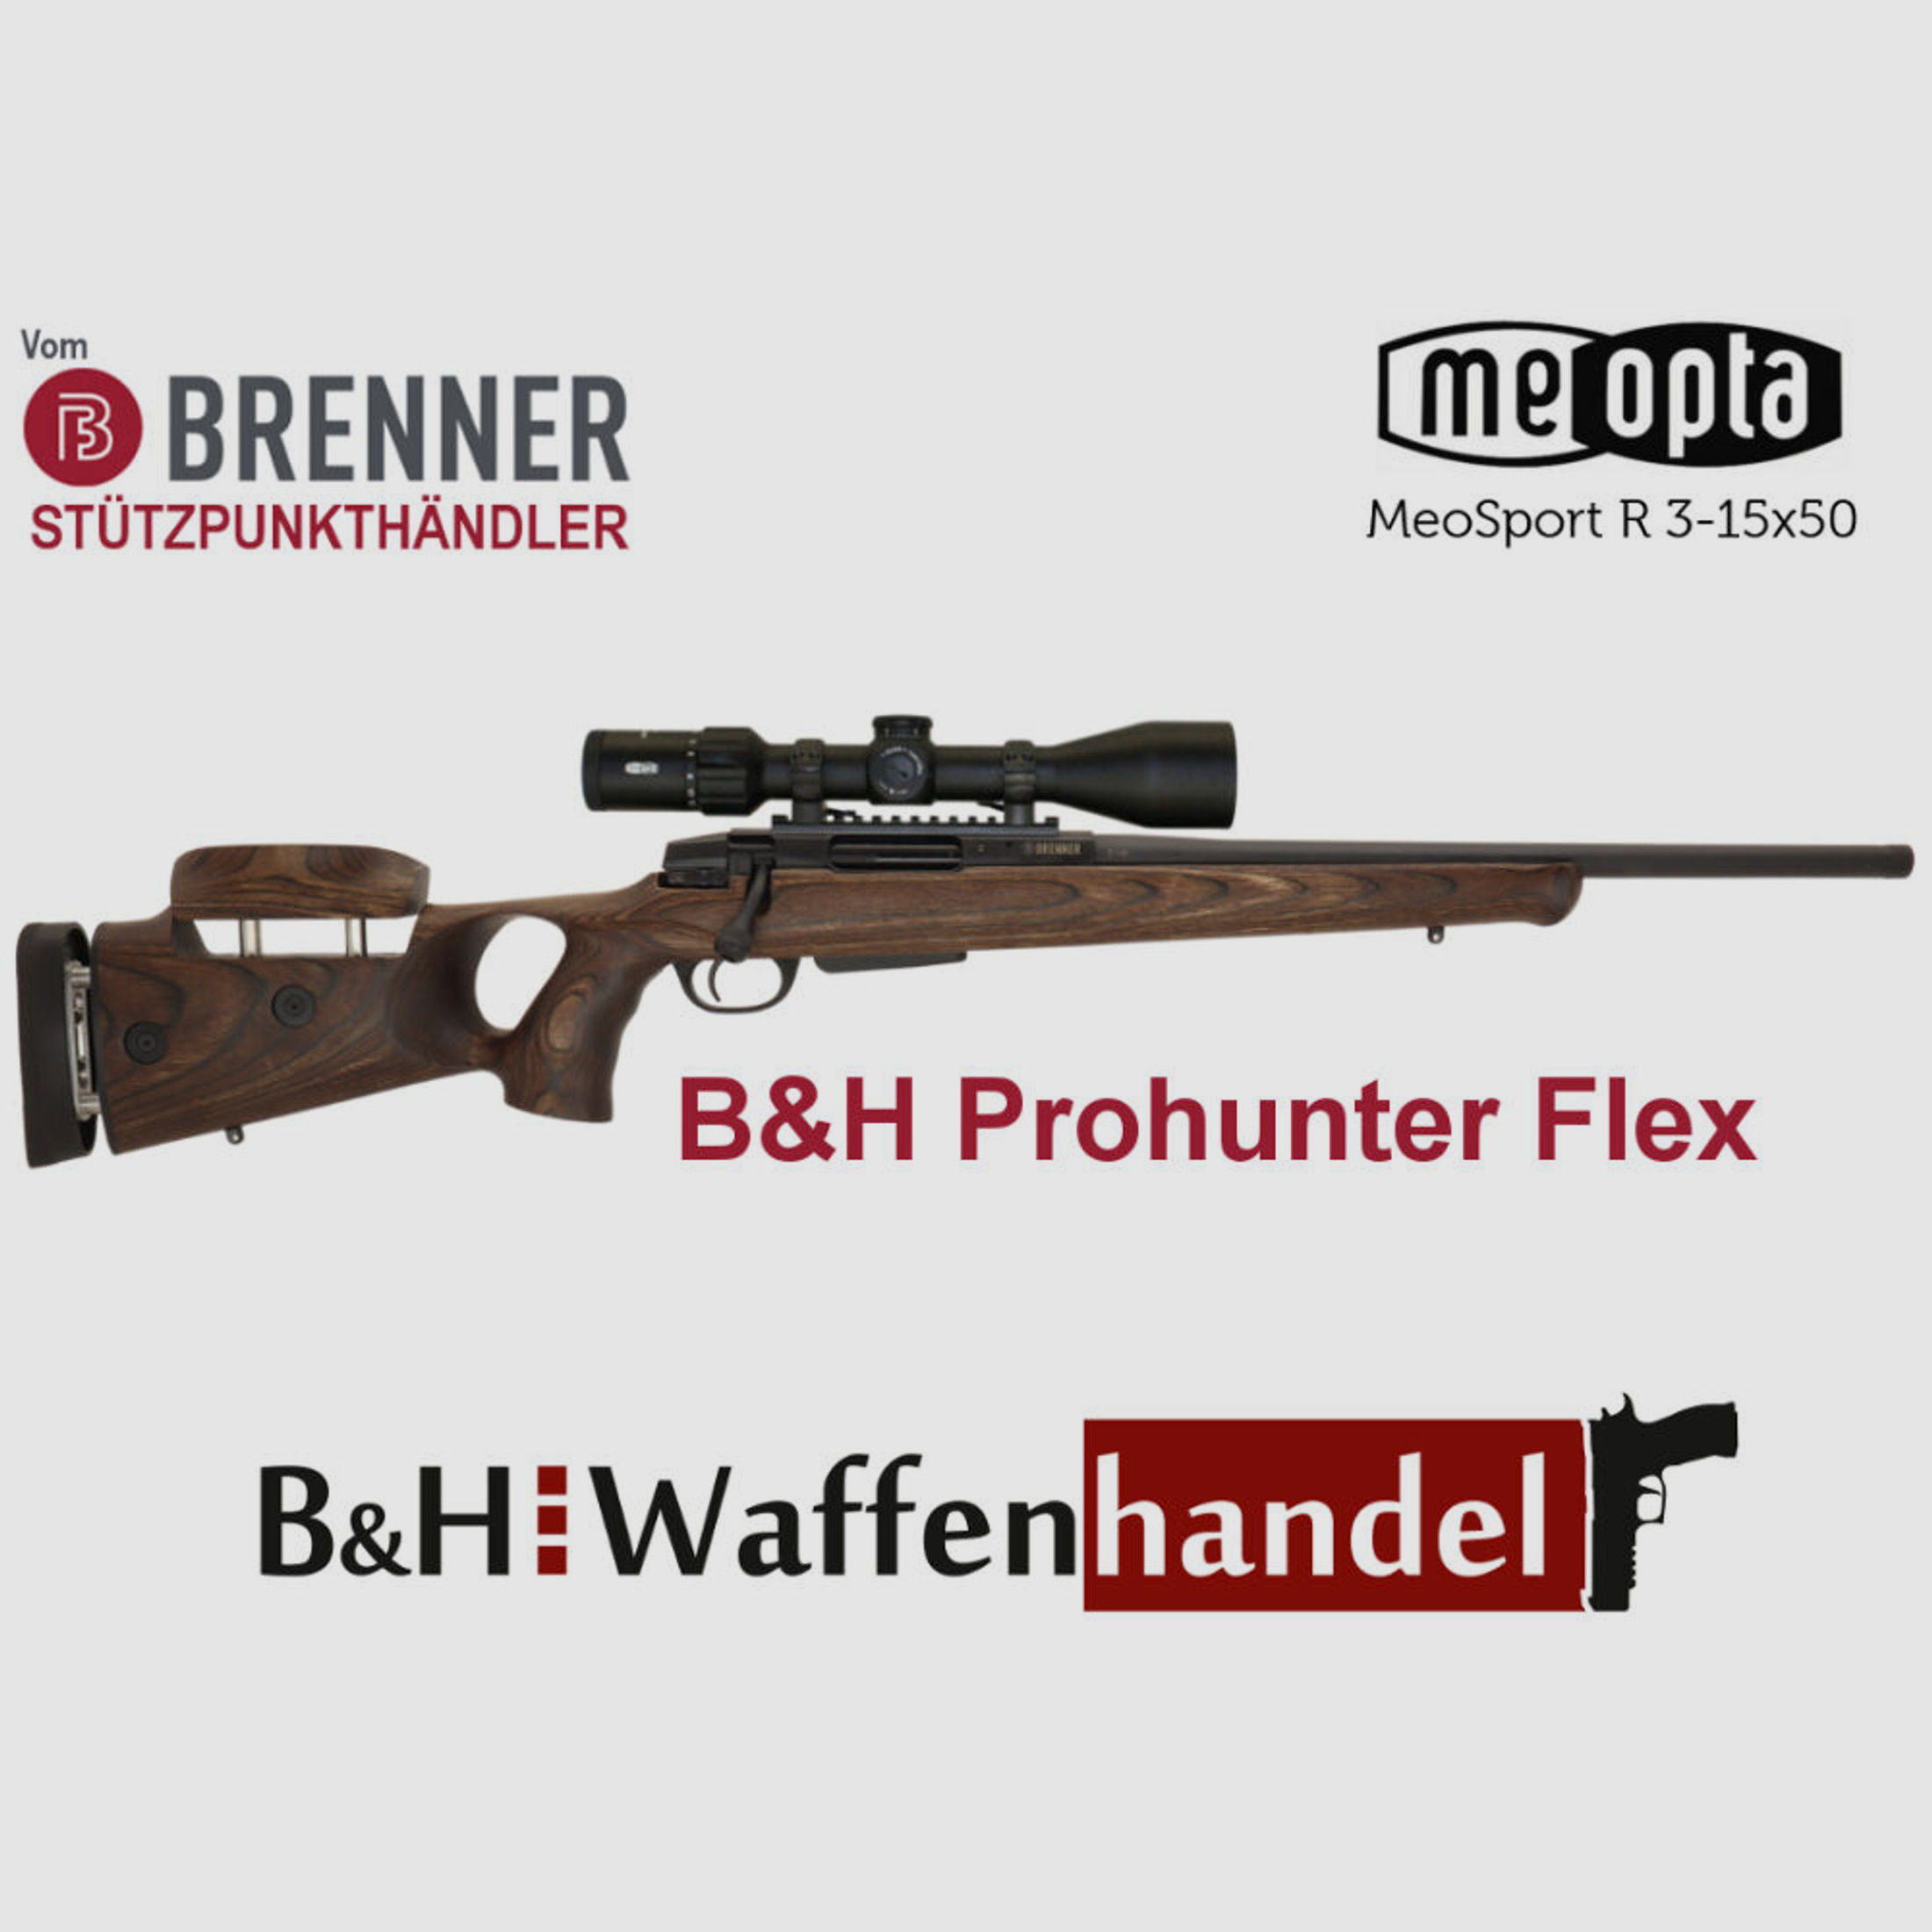 Brenner	 BR20 B&H Prohunter Flex Lochschaft Komplettpaket mit Meopta Meosport 3-15x50 Jagdbüchse